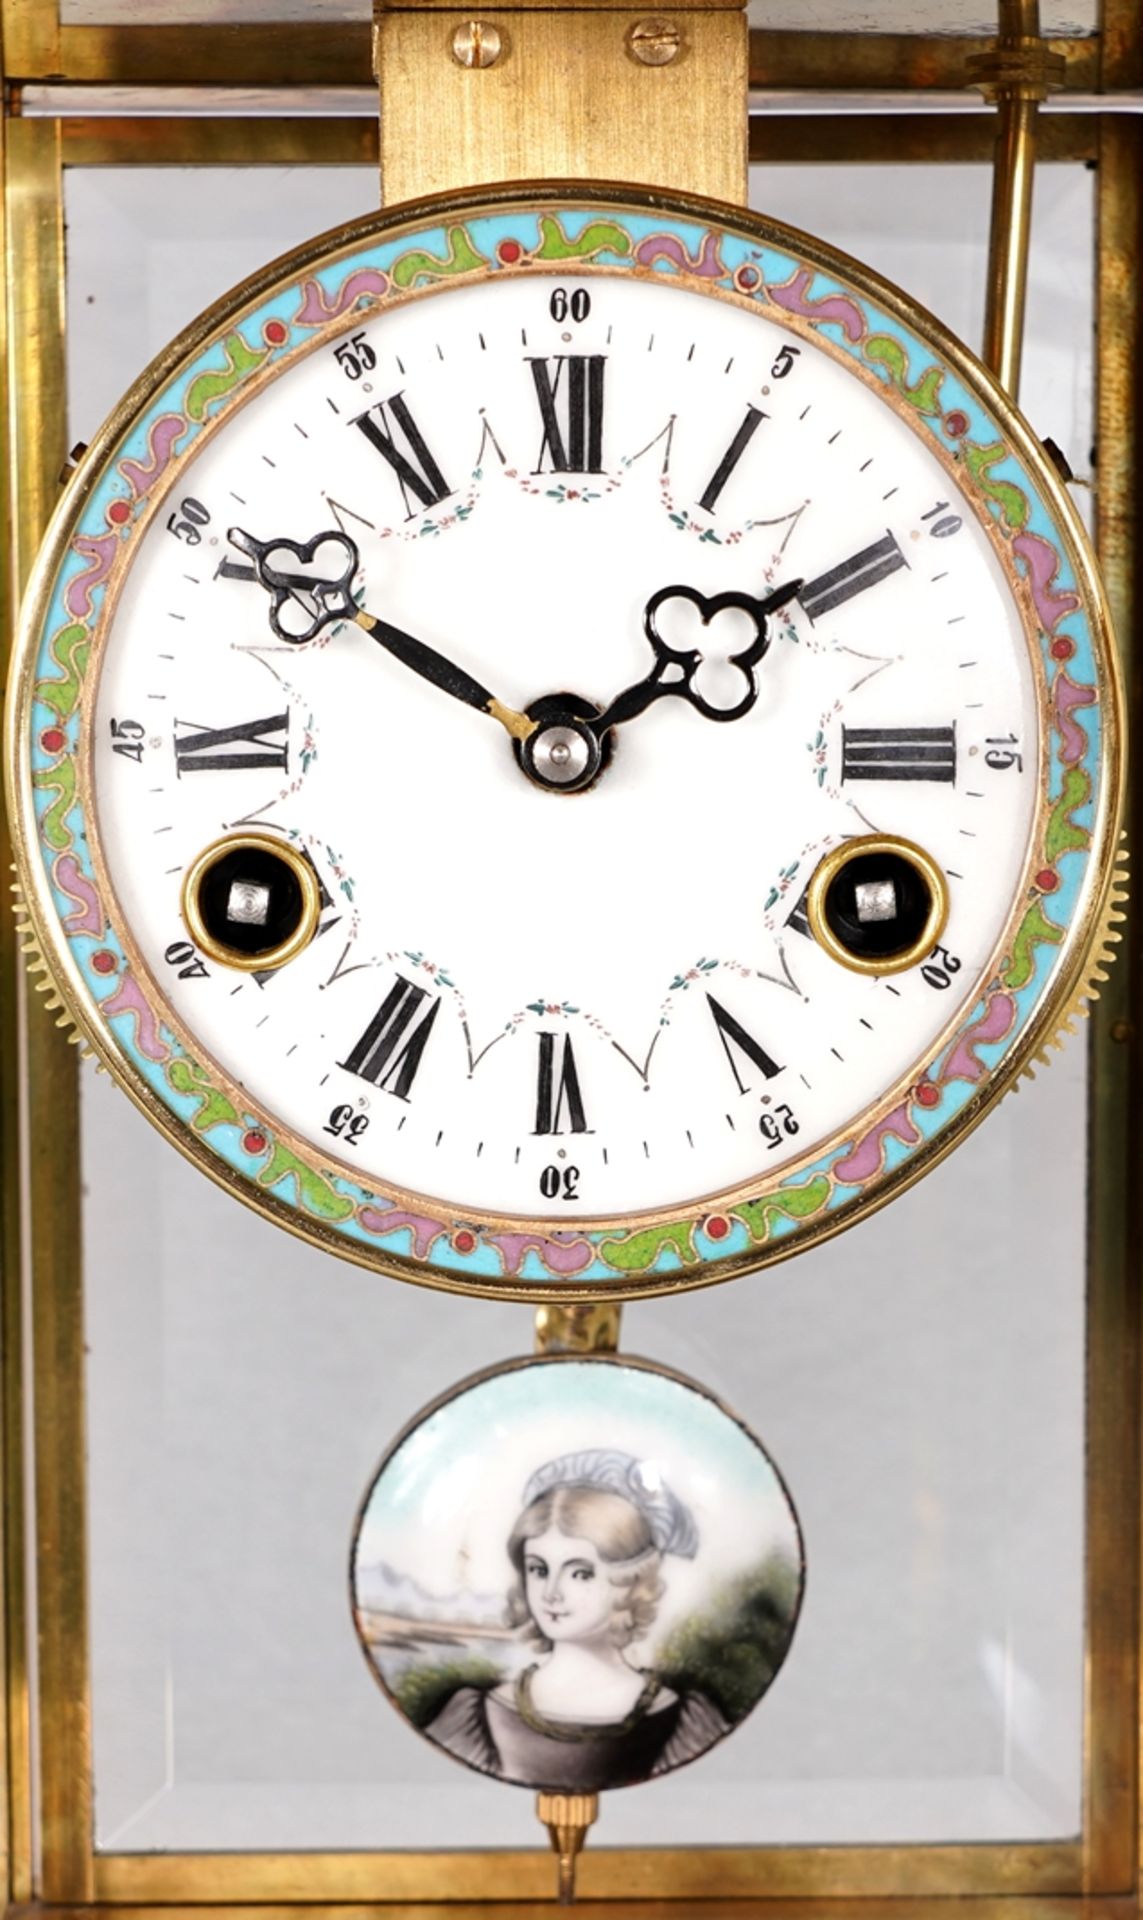 Cloisonné mantel clock - Image 2 of 6